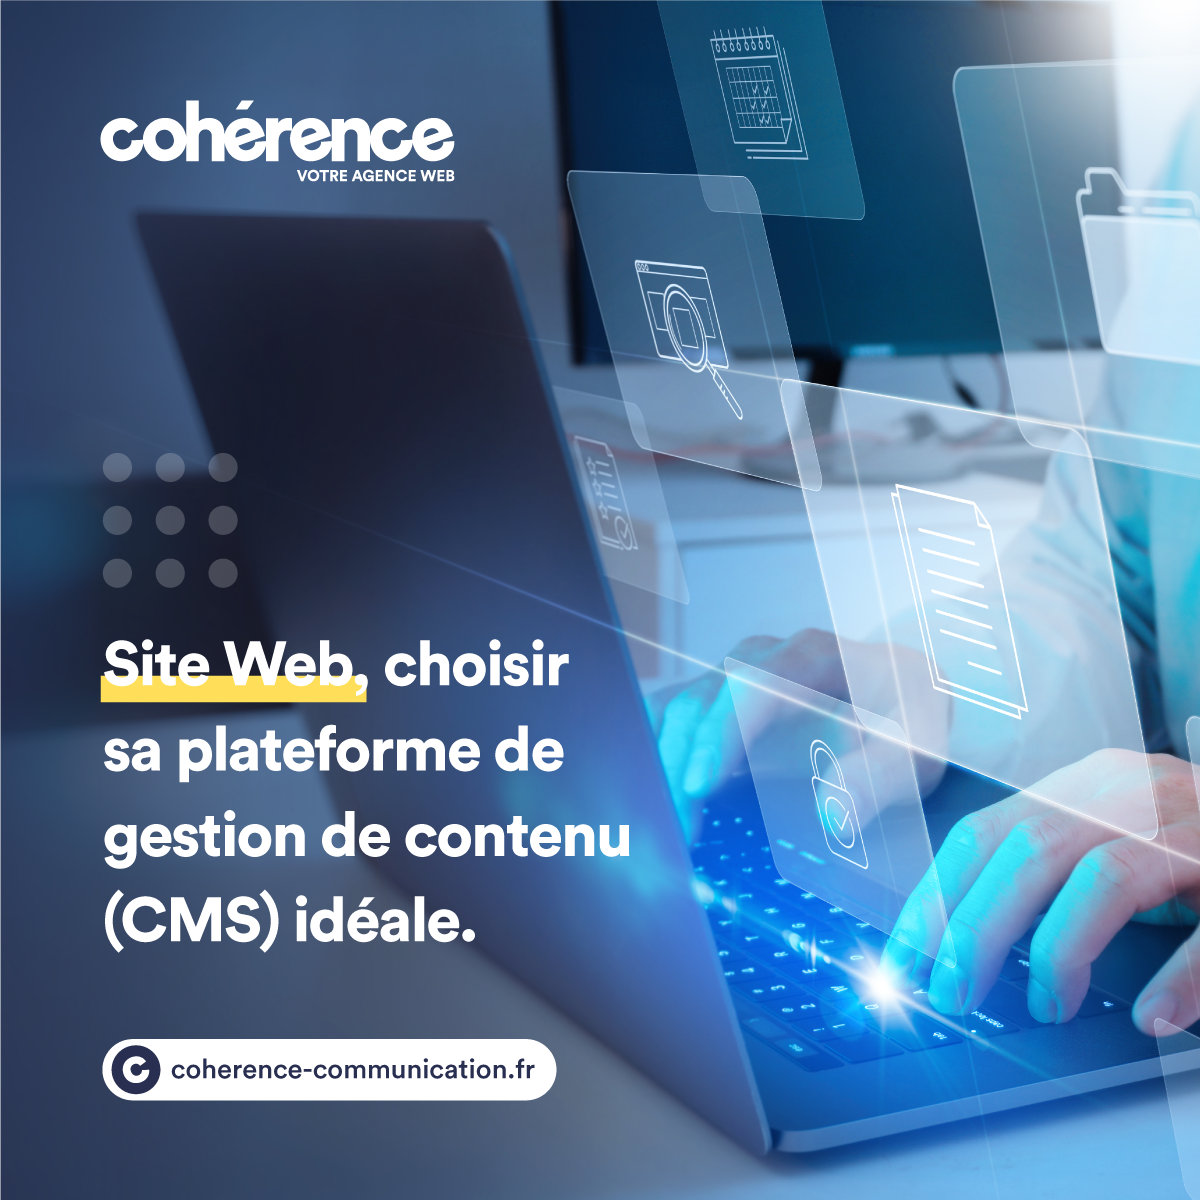 Coherence Agence Web A Rennes Comment Choisir La Plateforme De Gestion De Contenu CMS Parfaite Pour Votre Site Web 2